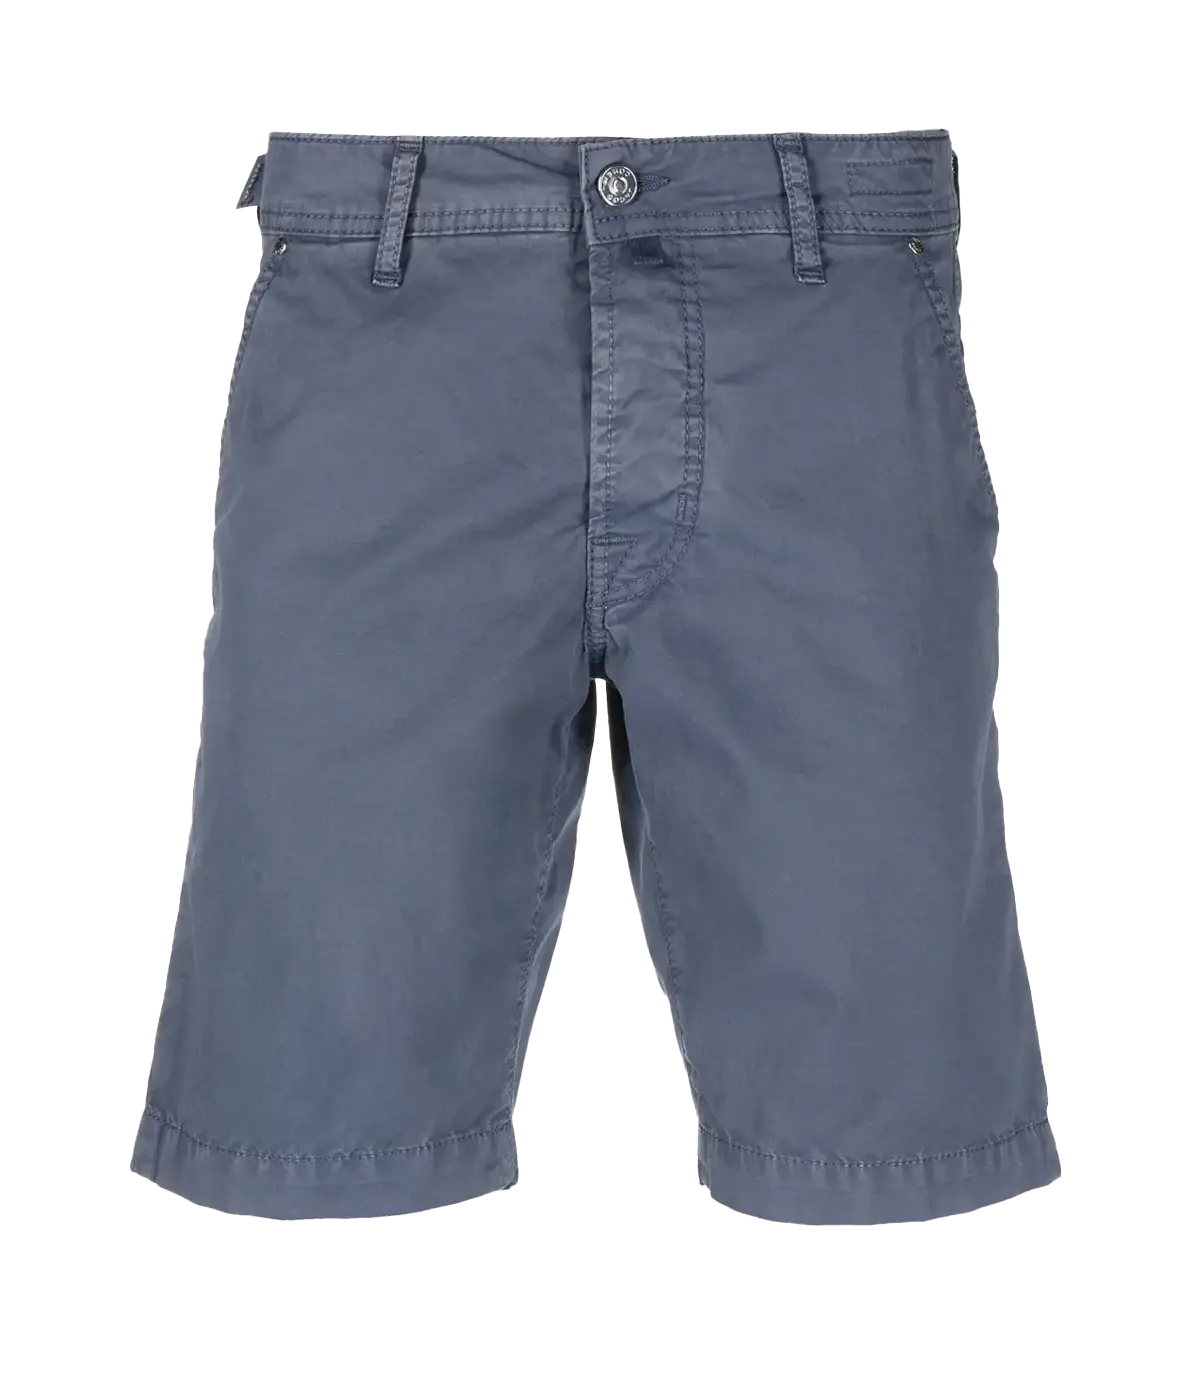 Nicolas Bermuda 5 Pocket Slim Short in Grey